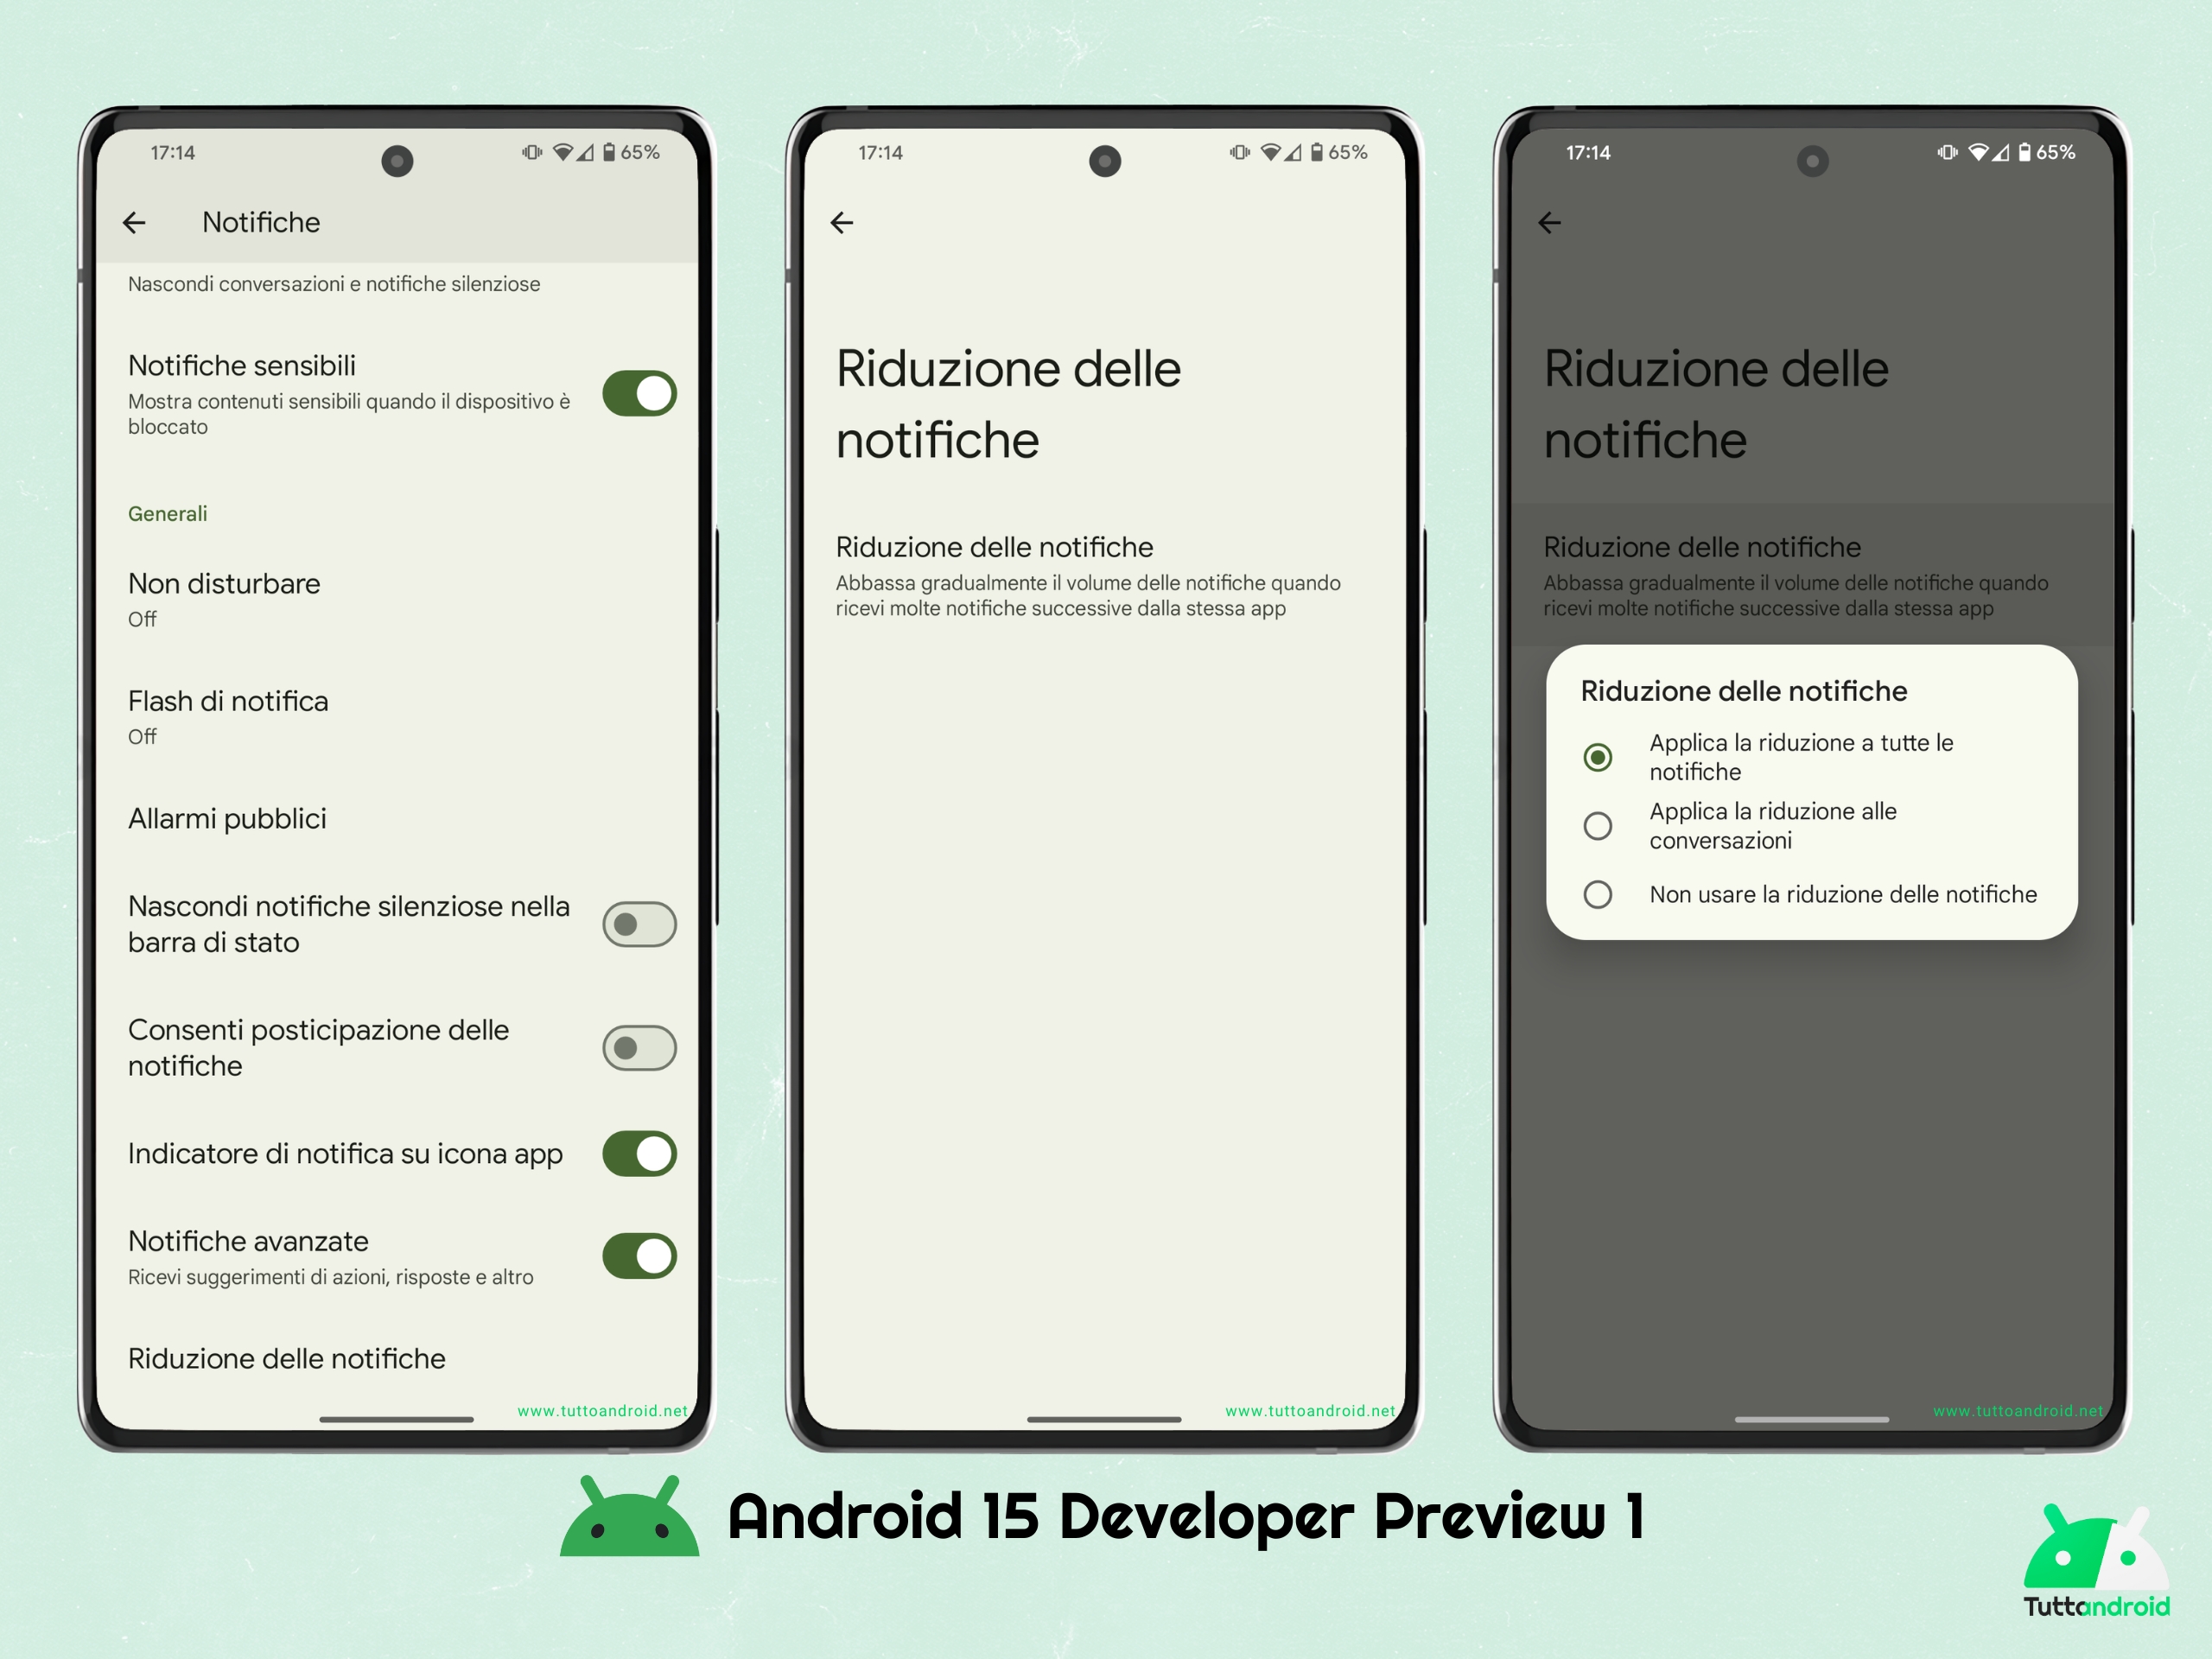 Android 15 DP1 - riduzione delle notifiche